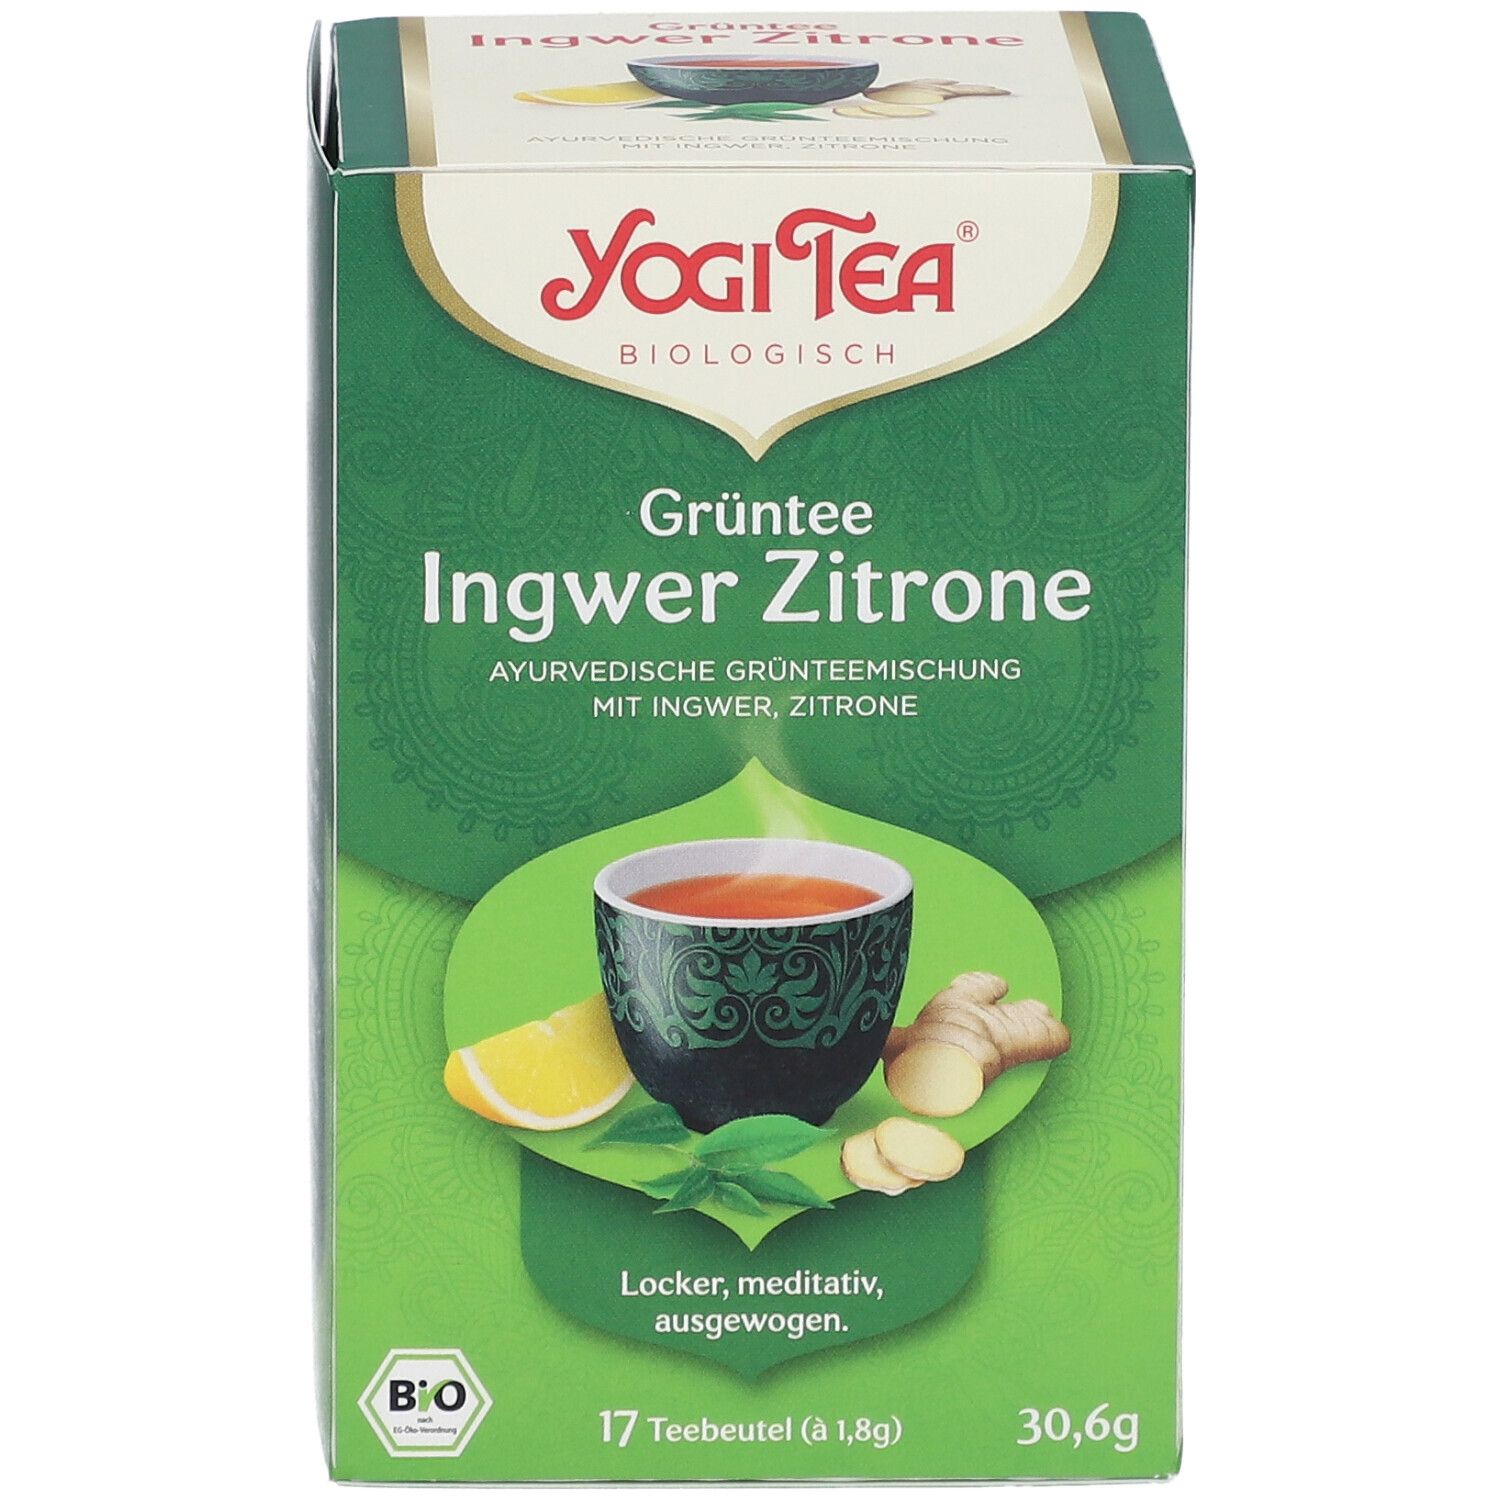 YOGI TEA® Grüntee Ingwer Zitrone, Grüner Bio-Tee